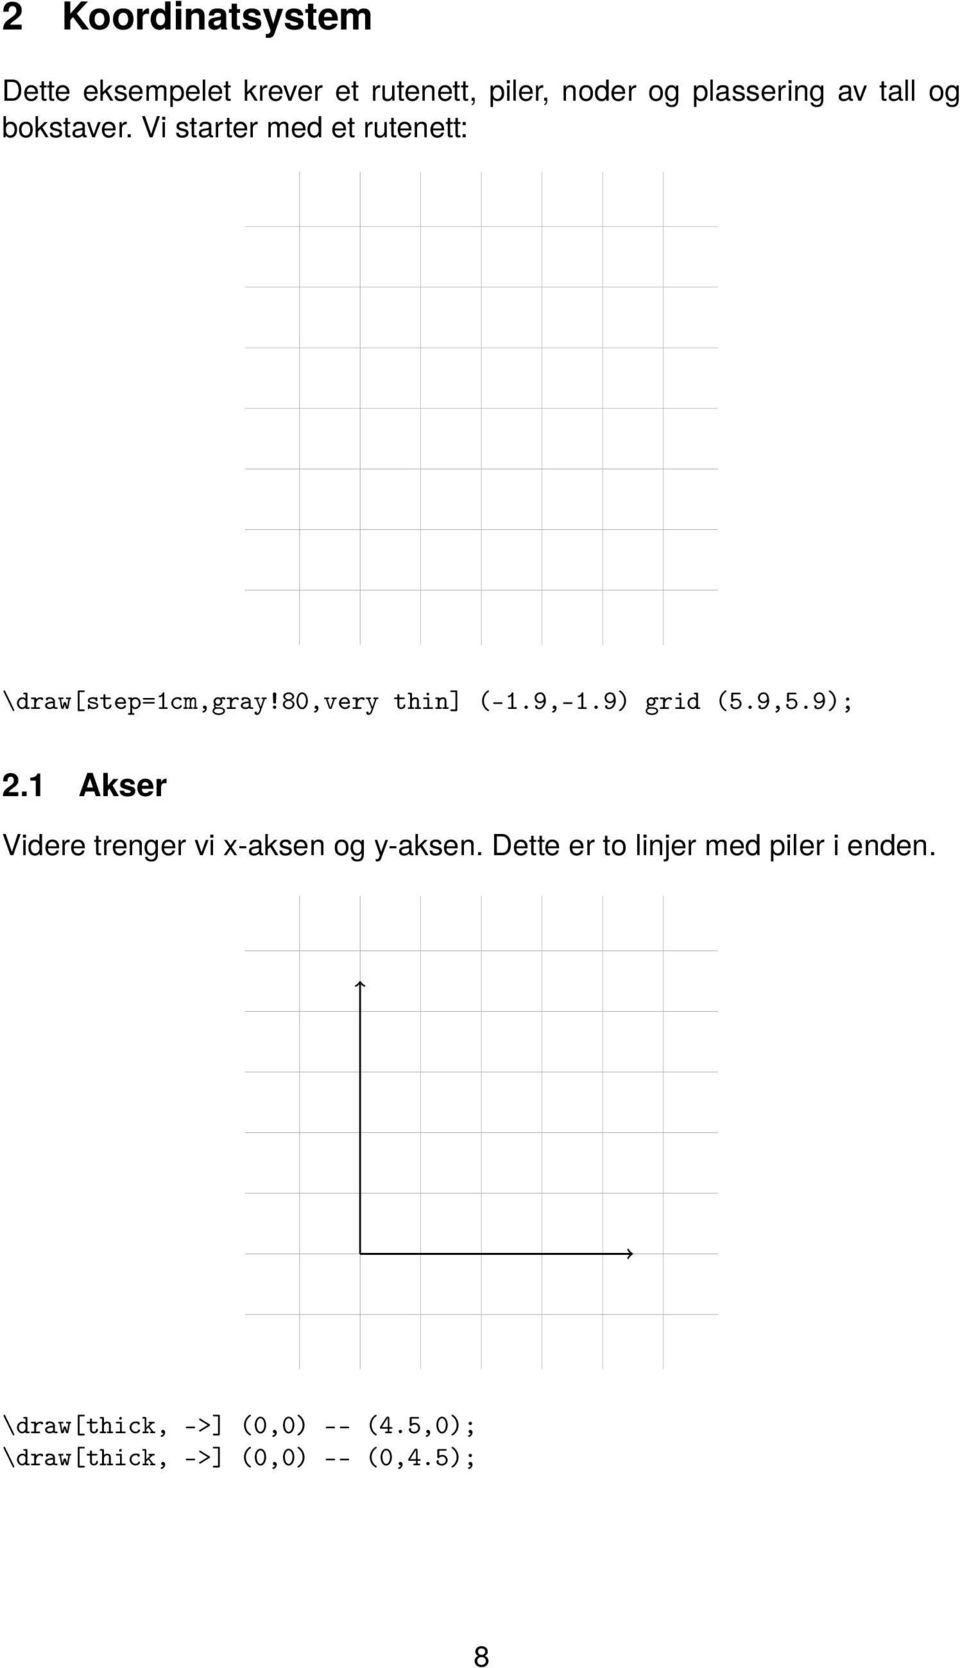 9,-1.9) grid (5.9,5.9); 2.1 Akser Videre trenger vi x-aksen og y-aksen.